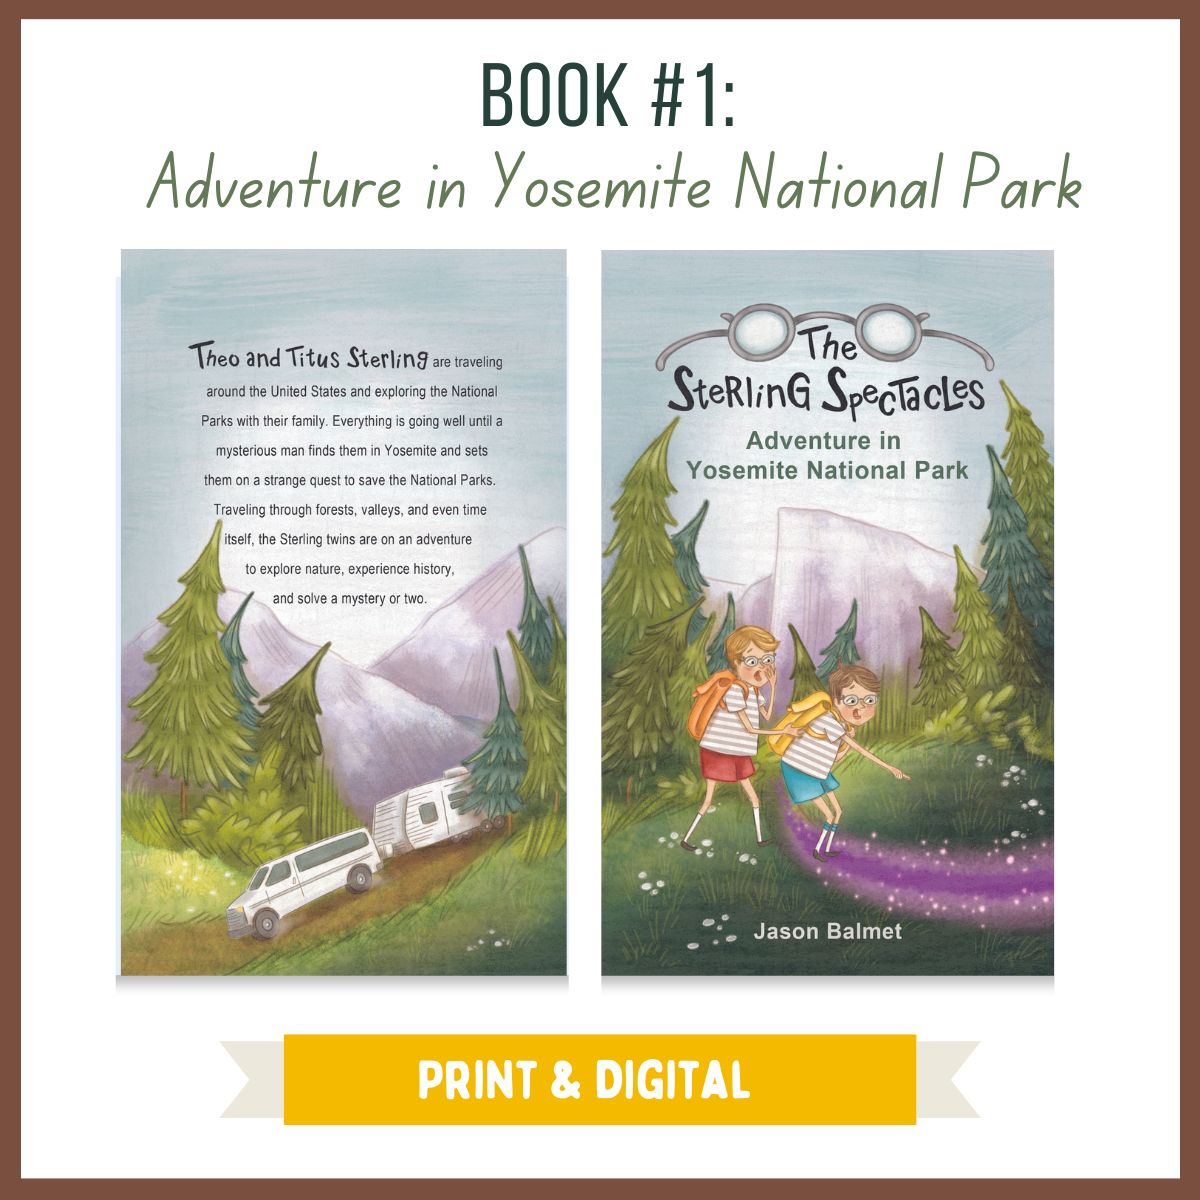 Book #1: Adventure in Yosemite National Park - PRINT